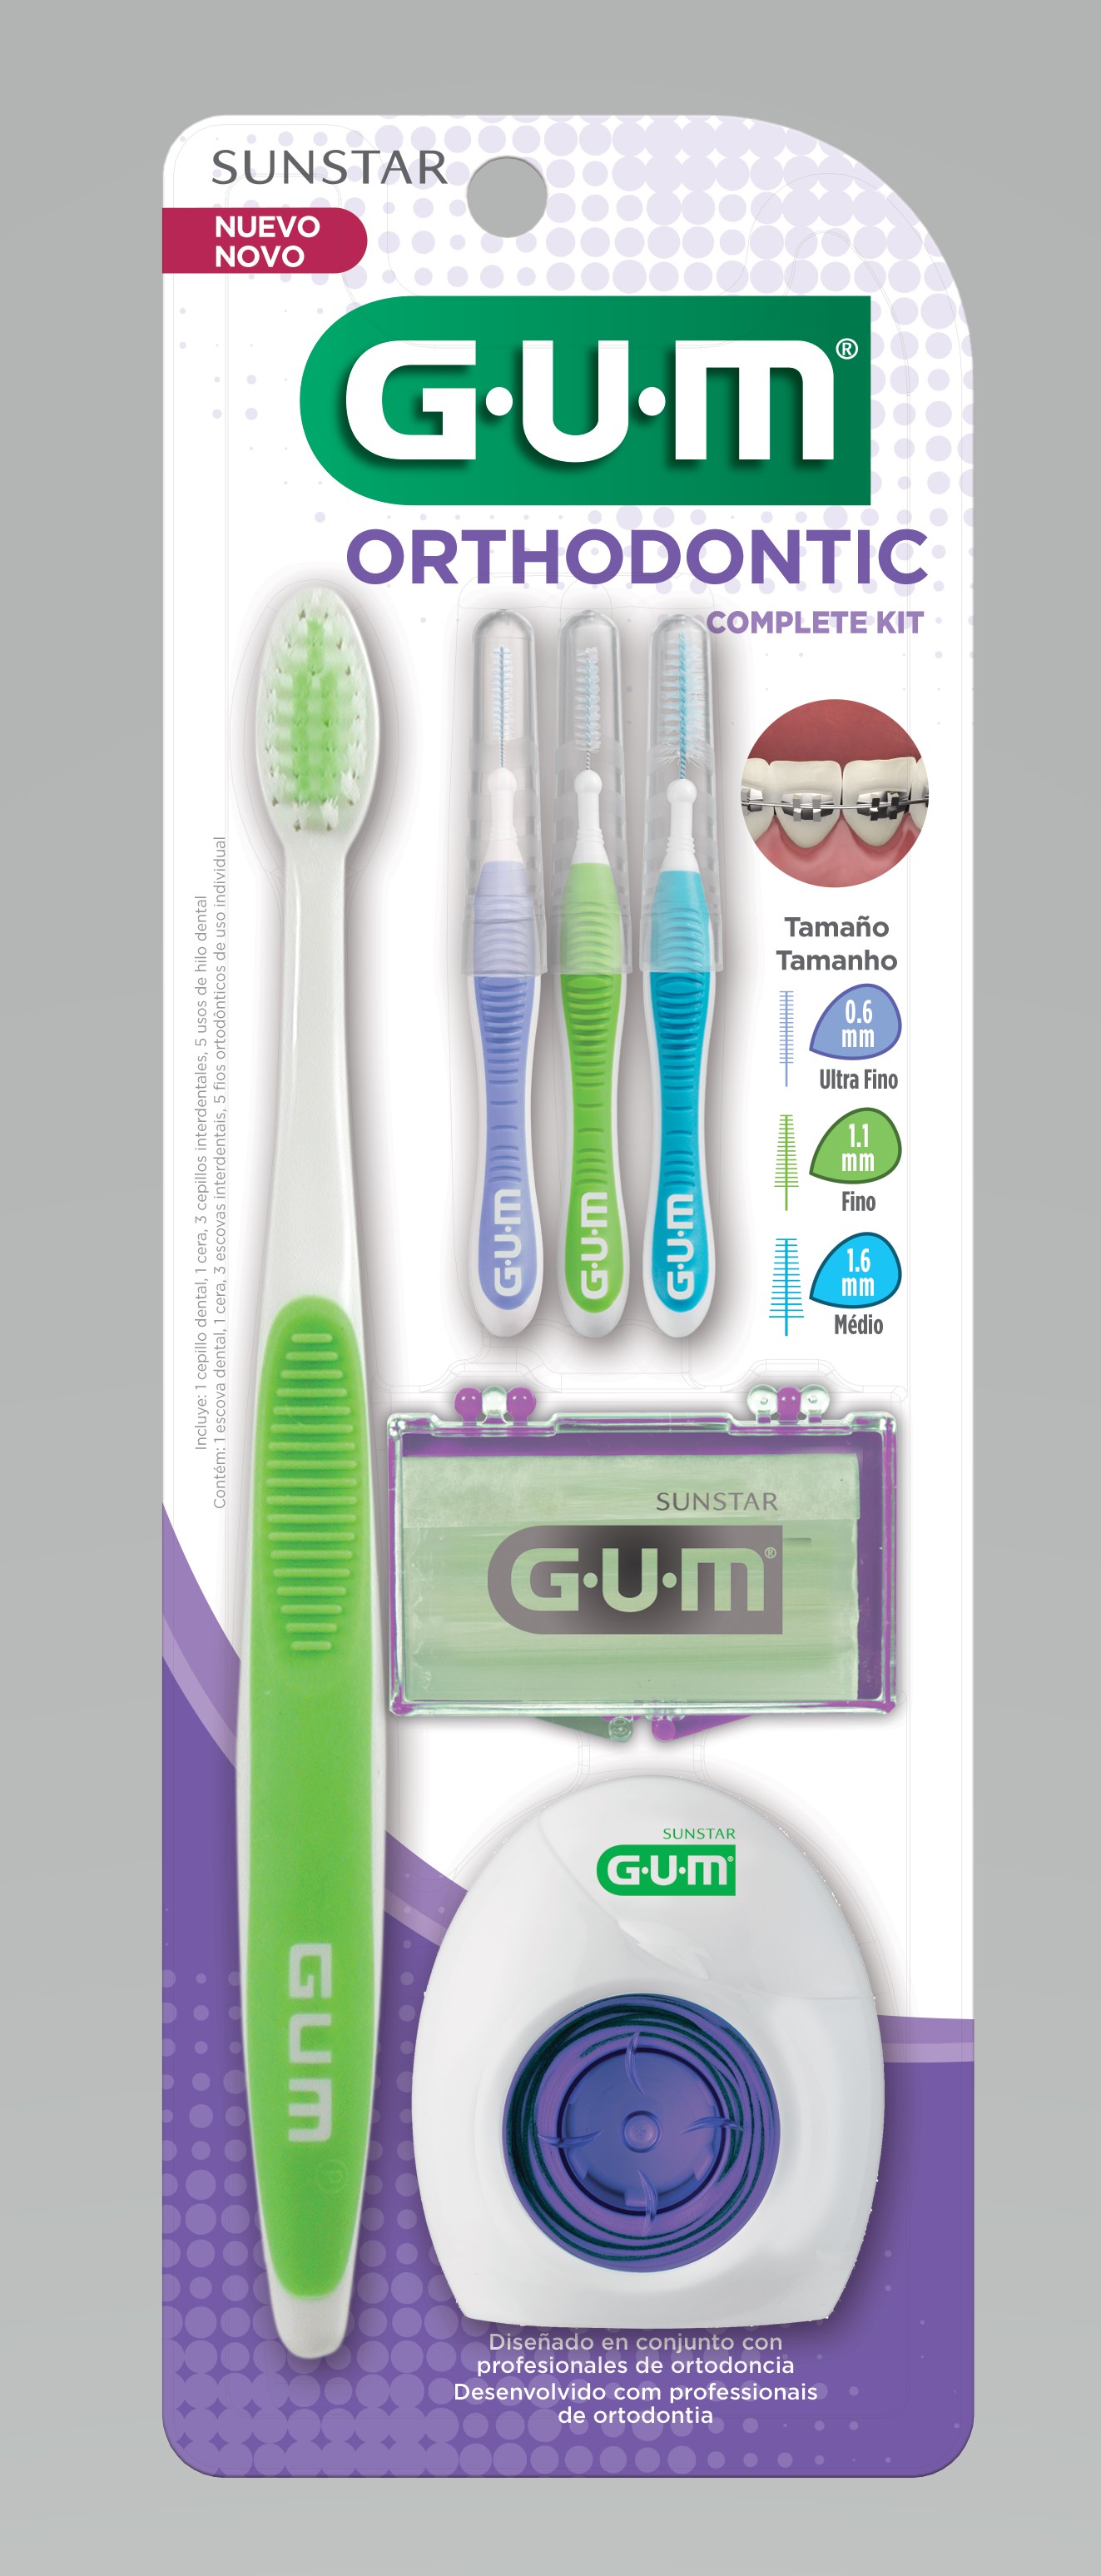 G·U·M Ortho Kit : ชุดแปรงและอุปกรณ์สำหรับผู้จัดฟัน